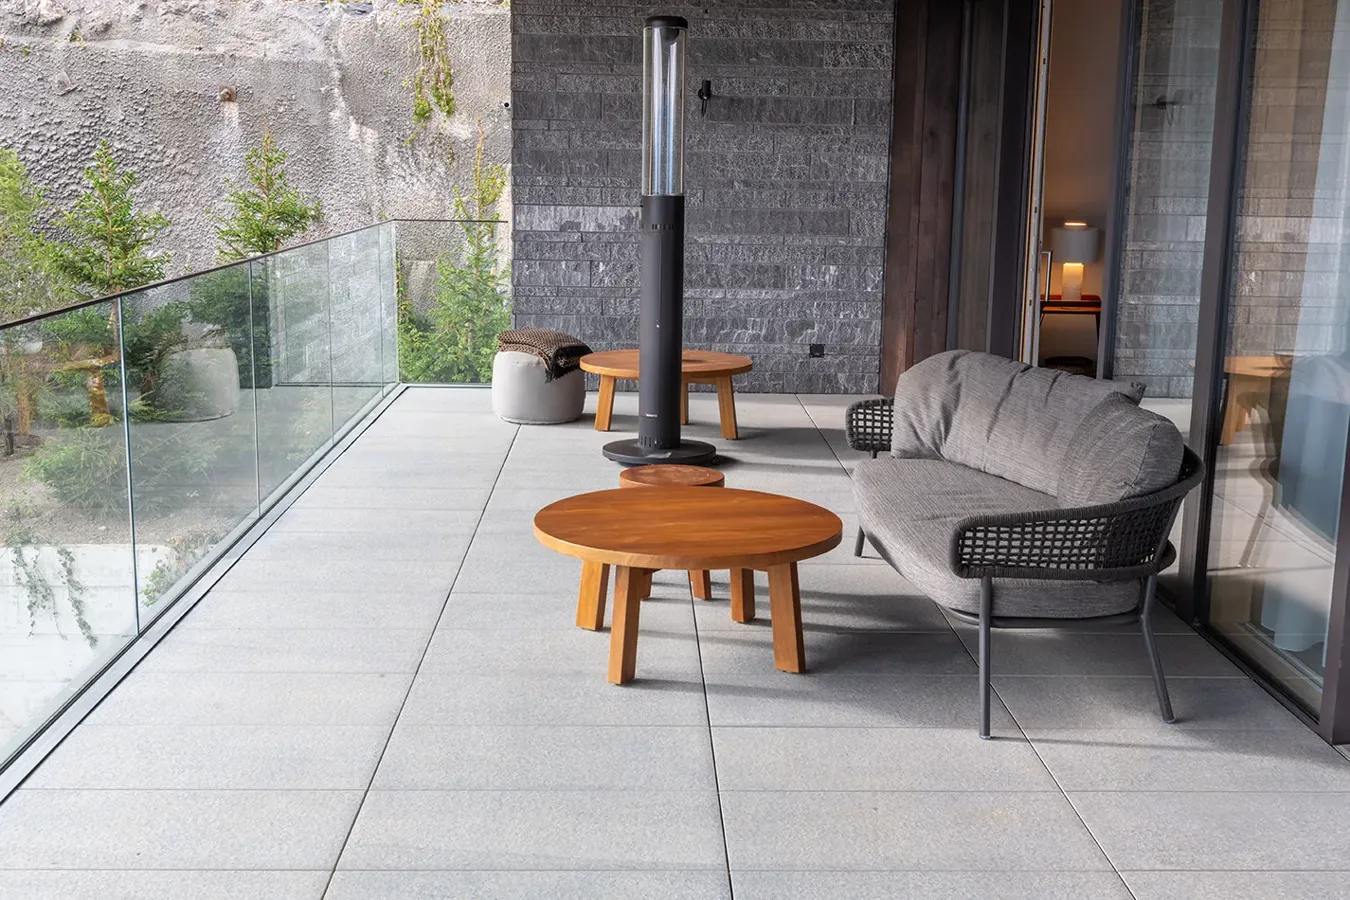 Stilvolle Terrasse mit grauen Feinsteinzeugfliesen und Außenmöbeln aus Stoff und Holz, umgeben von Steinwänden und Glas.